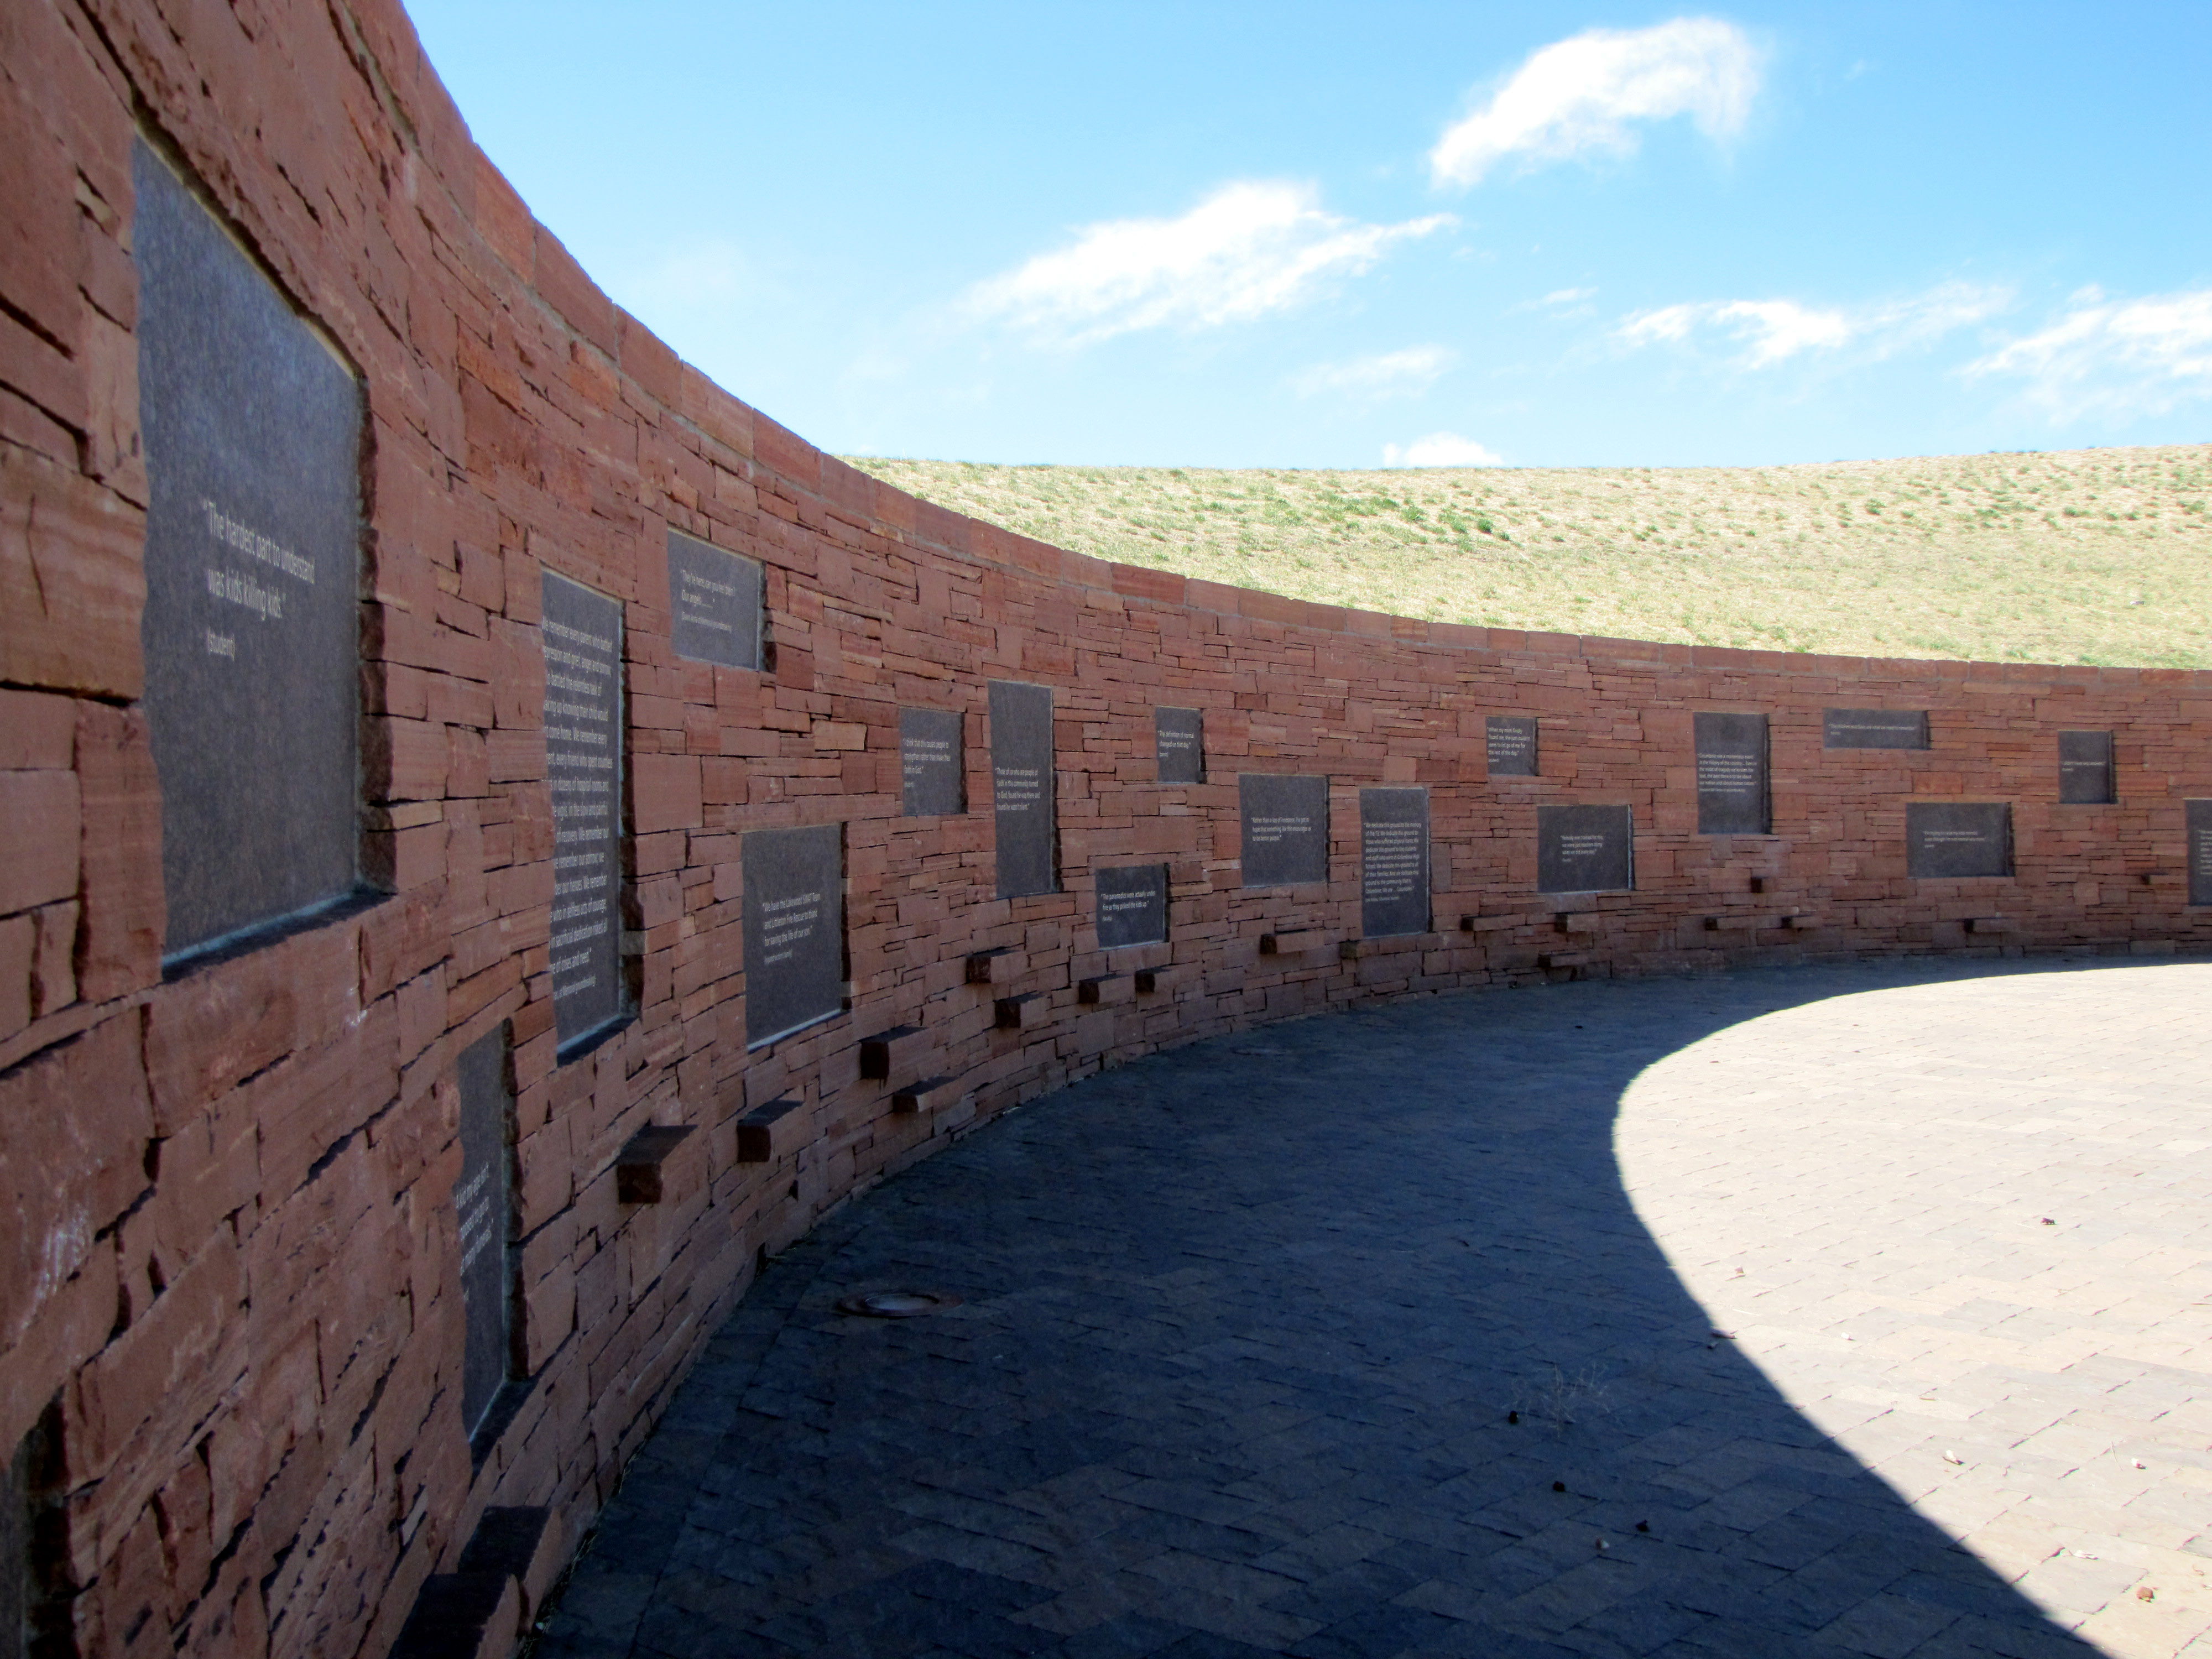 Columbine Memorial